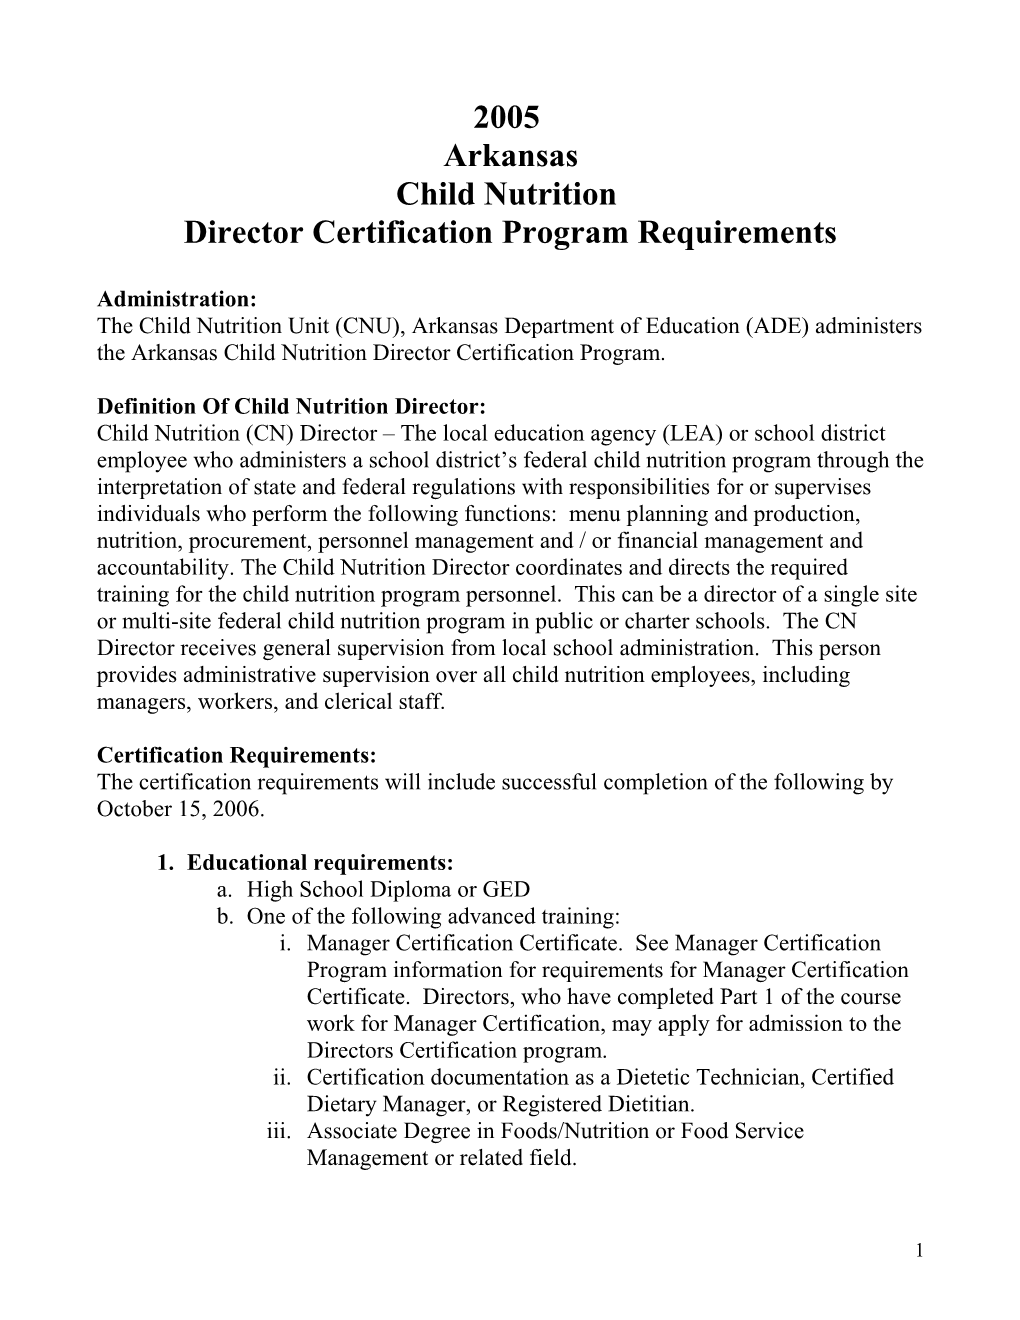 Director Certification Program Requirements